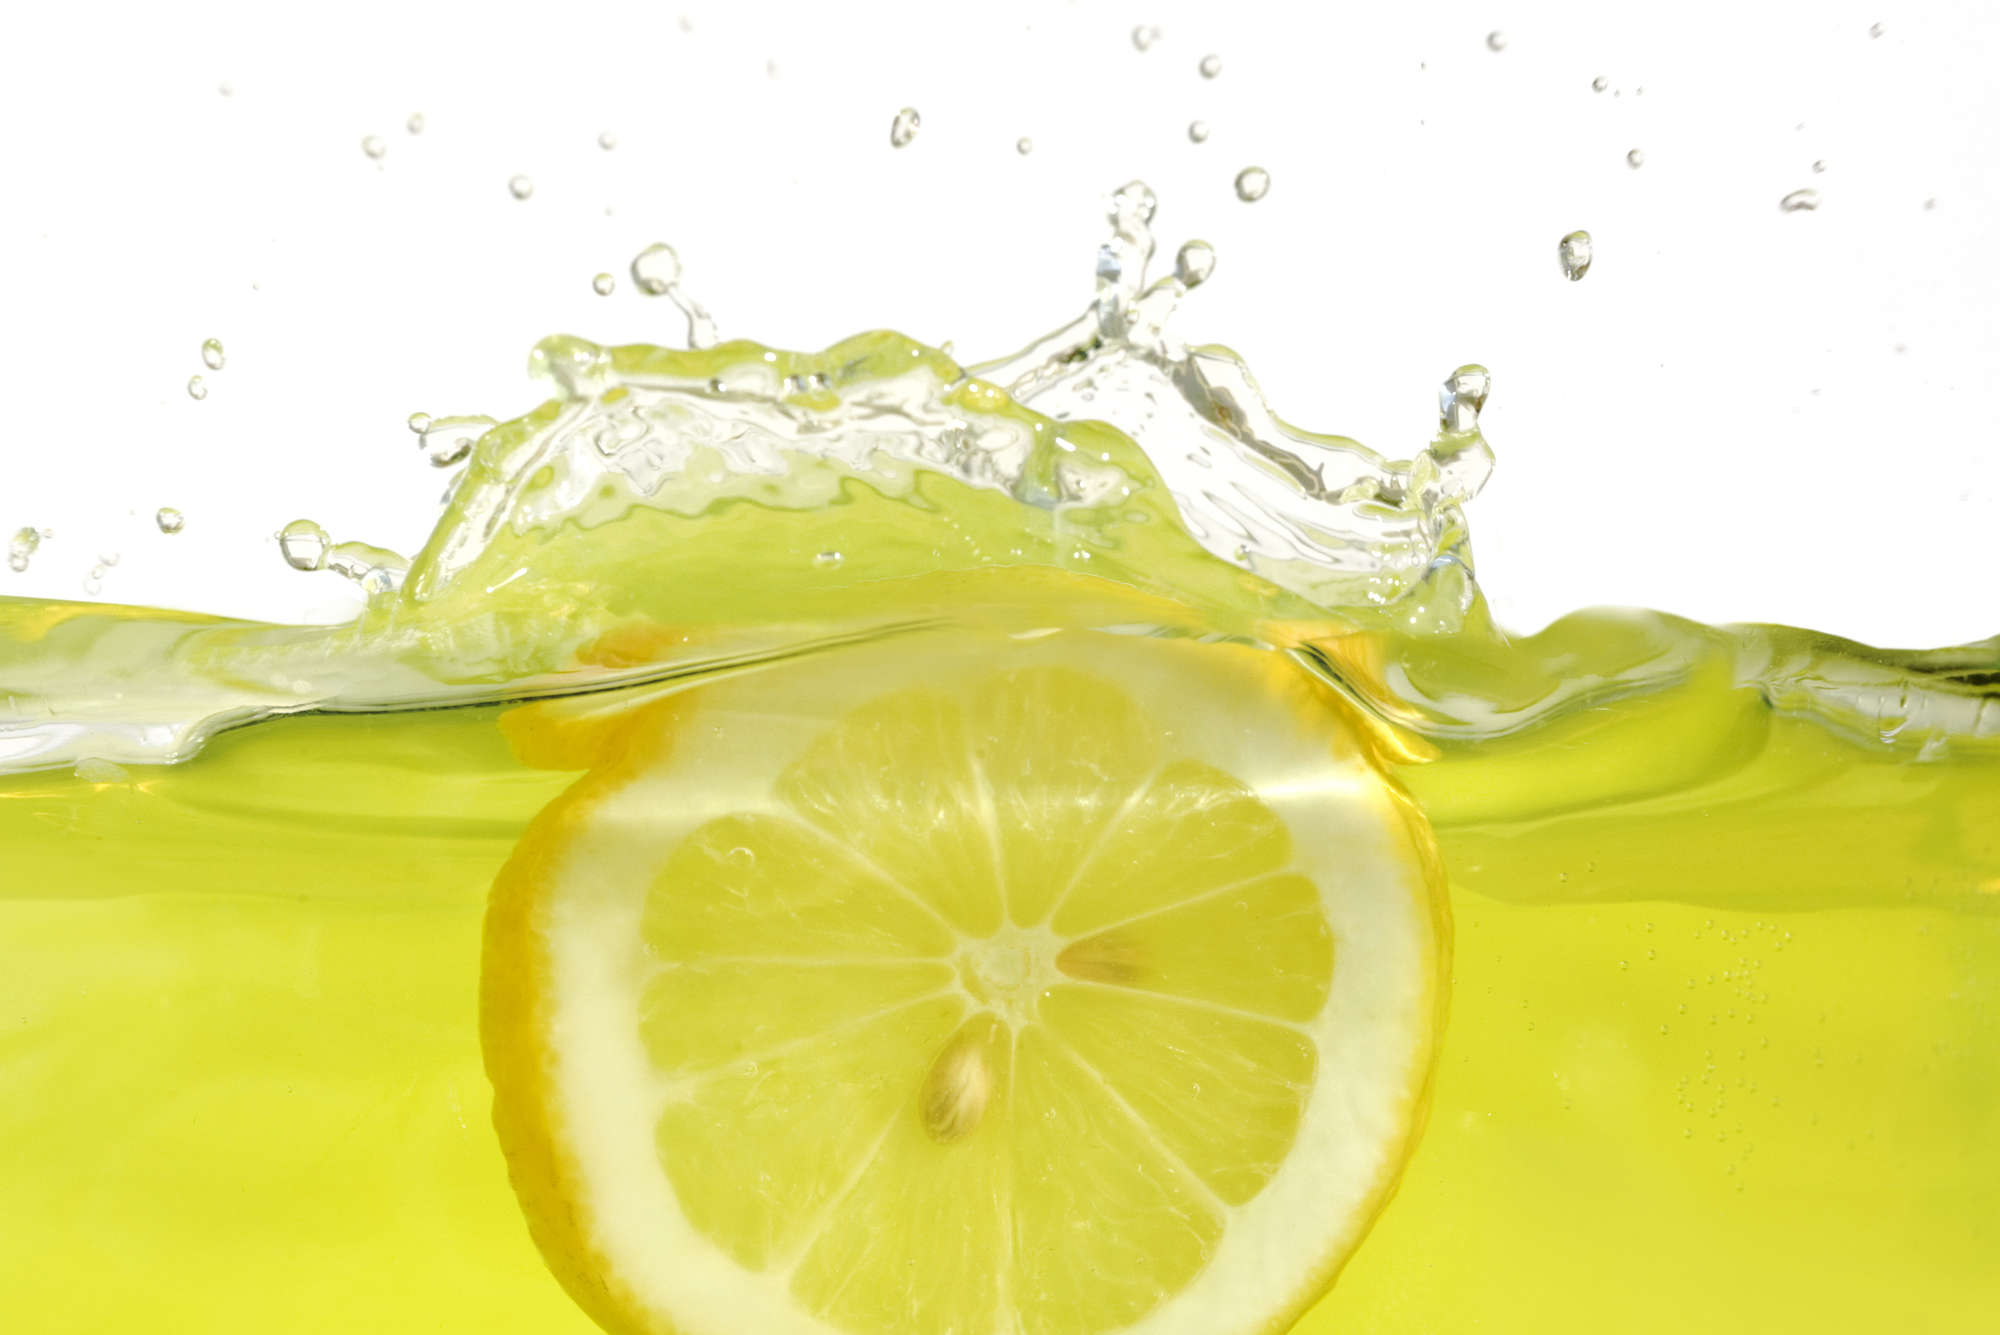             Carta da parati Lemon in the Water - Vello liscio Premium
        